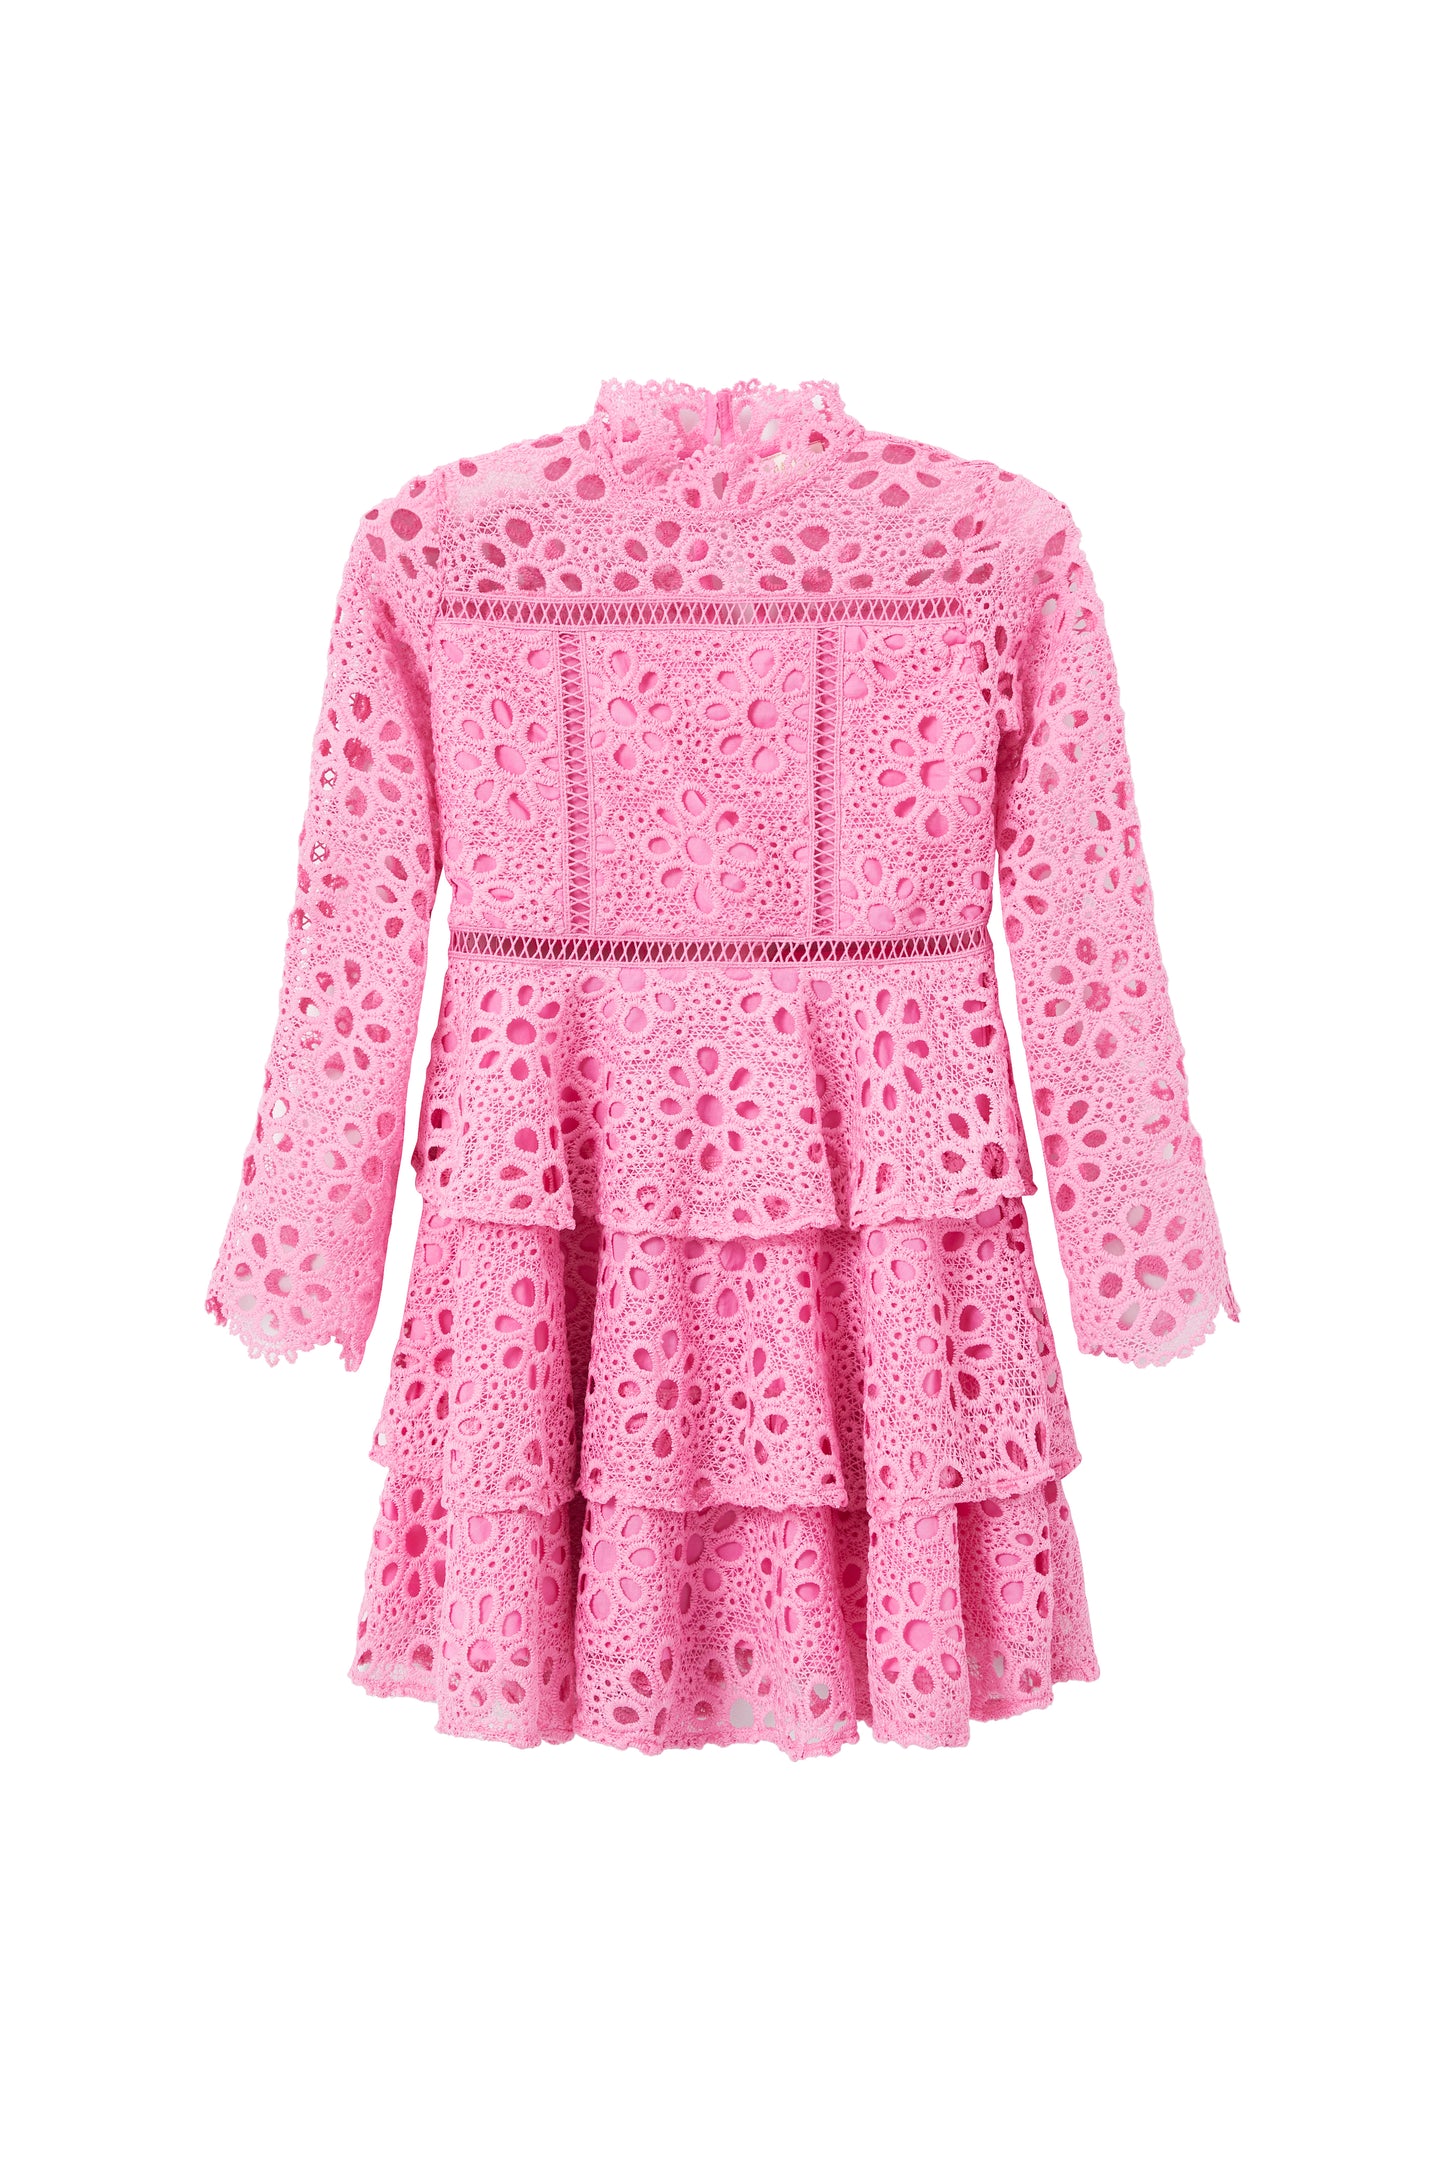 Delilah Pink Embroidered Dress